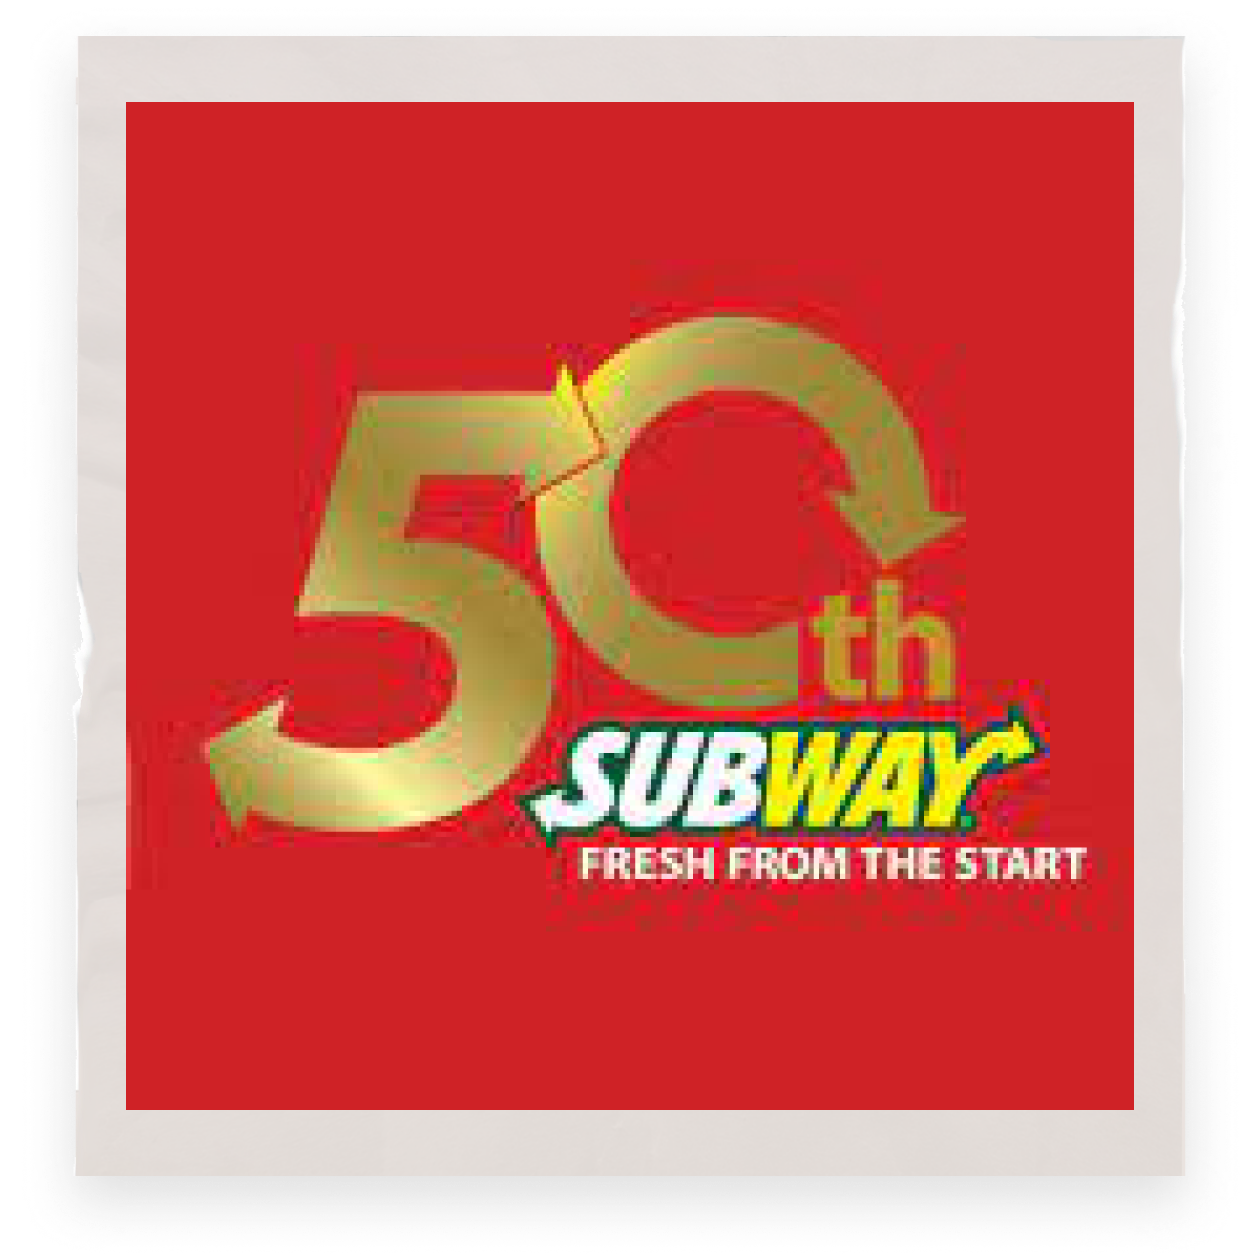 为了庆祝品牌成立50周年，赛百味®制作了巨型三明治，并打破最多人同时制作三明治的吉尼斯纪录：1481人同时制作一个三明治。